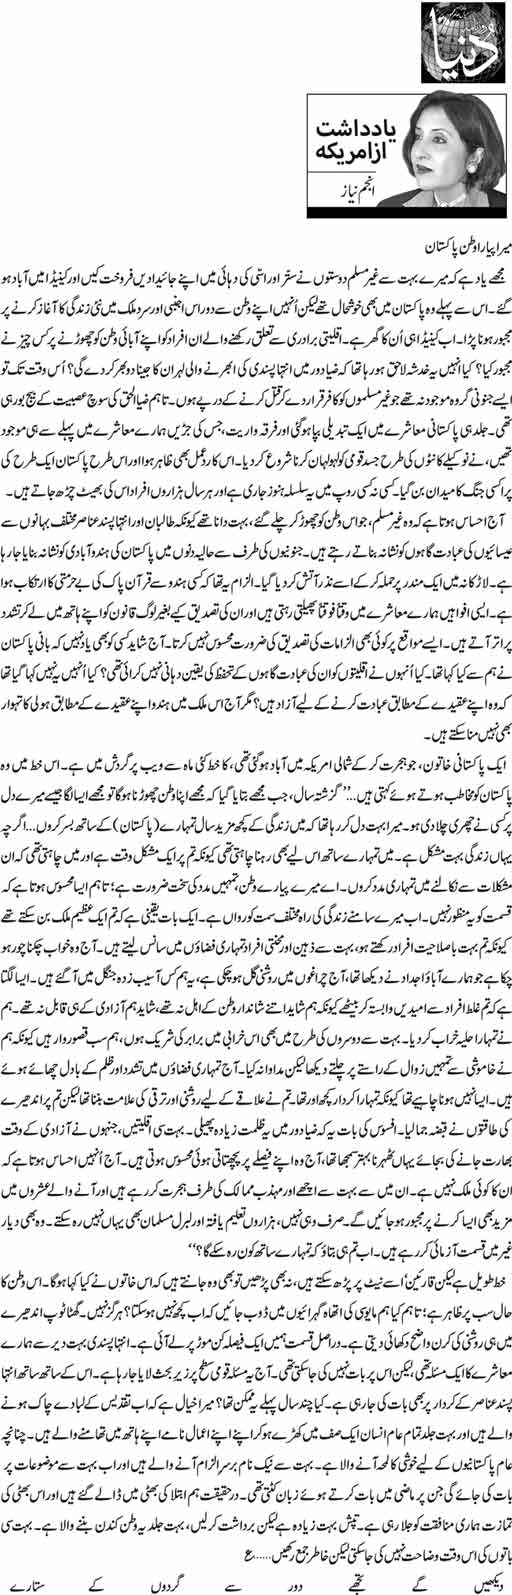 Mera Pyara Watan Pakistan Anjum Niaz Daily Urdu Columns Pashto, punjabi, sindhi, balochi, seraiki and many other regional languages are also spoken. mera pyara watan pakistan anjum niaz